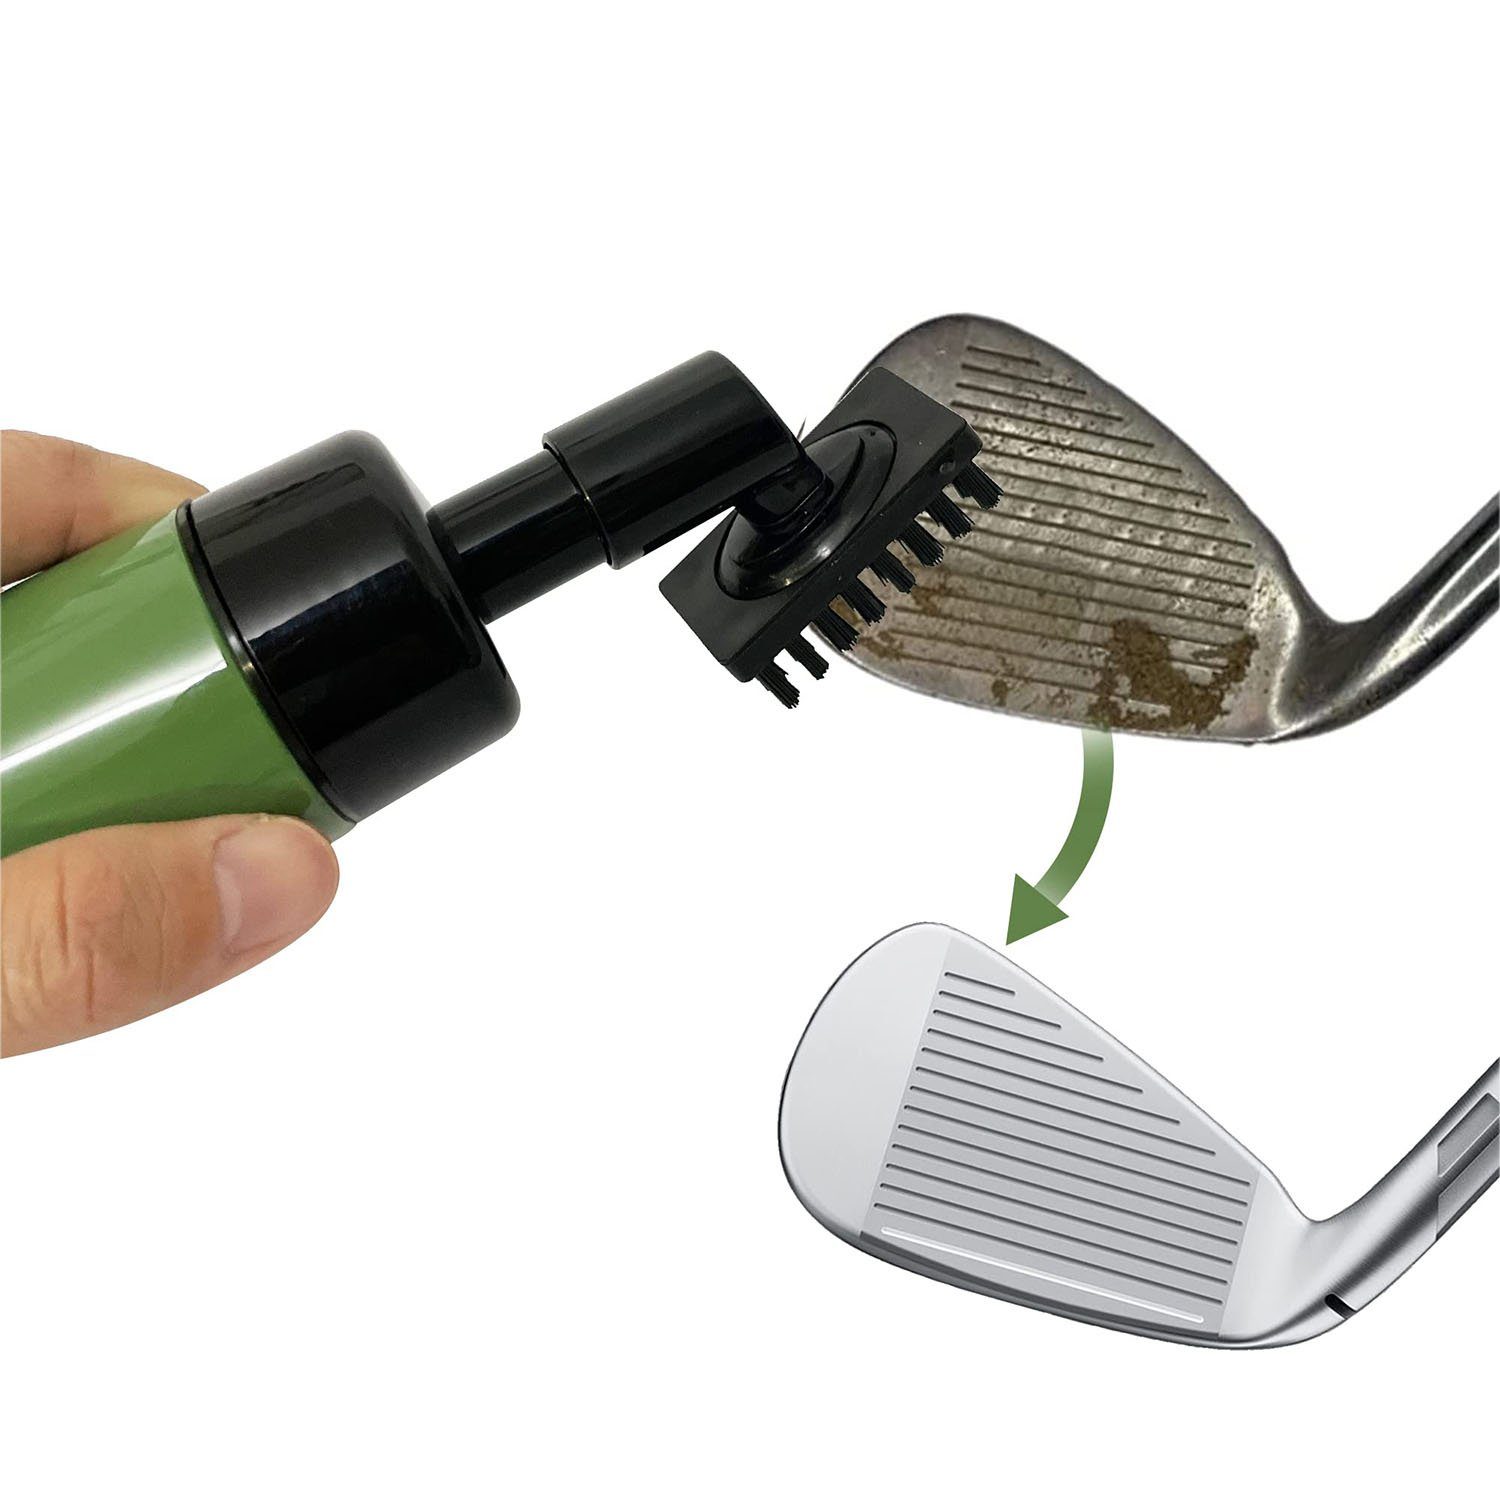 MAGICSHE Bürste Golf beste Accessoires, Golf Pinsel Reinigungsbürste, Essential Geschenk Golf Club Golf grün für das Männer Reiniger, Club